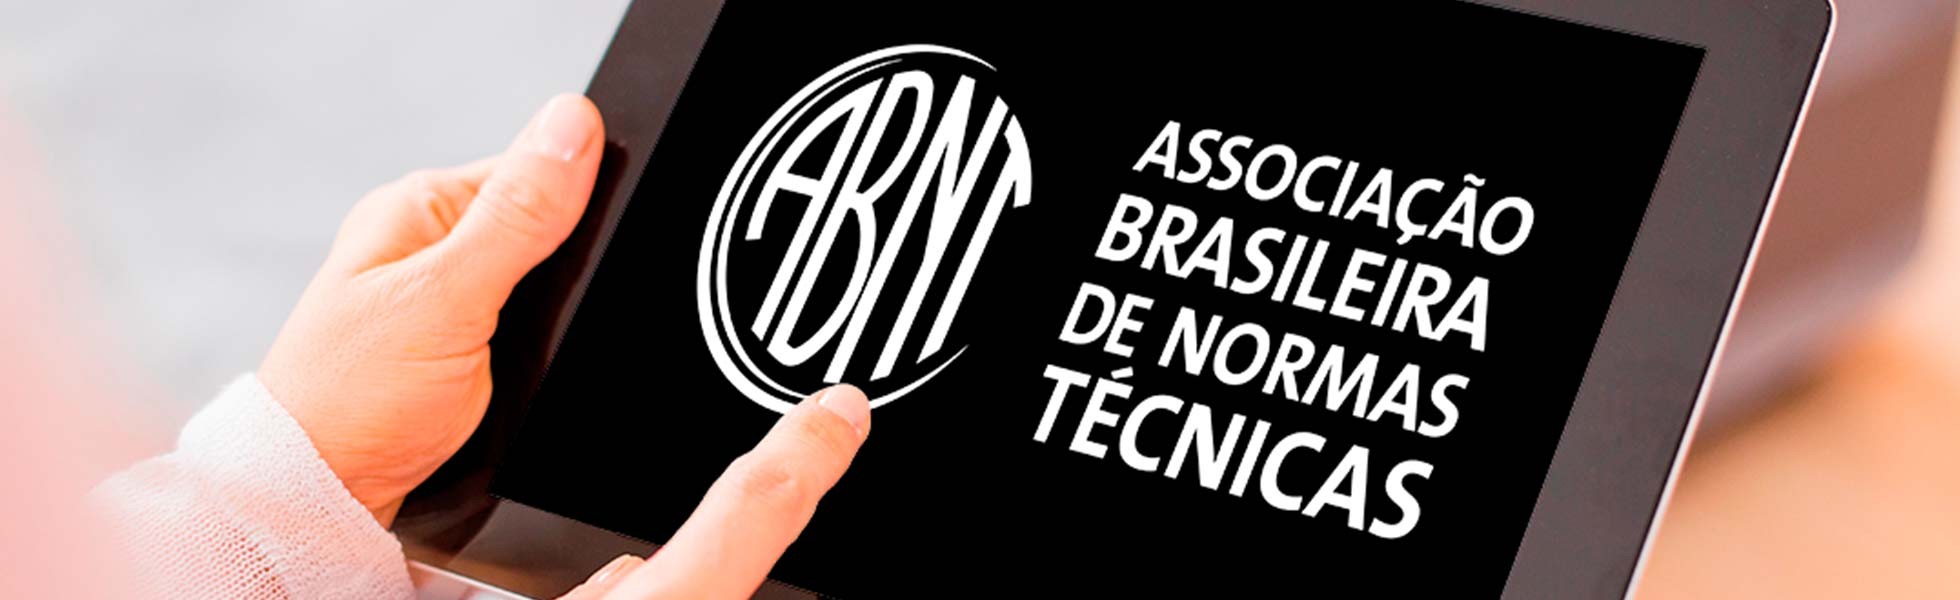 ABNT - ASSOCIAÇÃO BRASILEIRA DE NORMAS TÉCNICAS